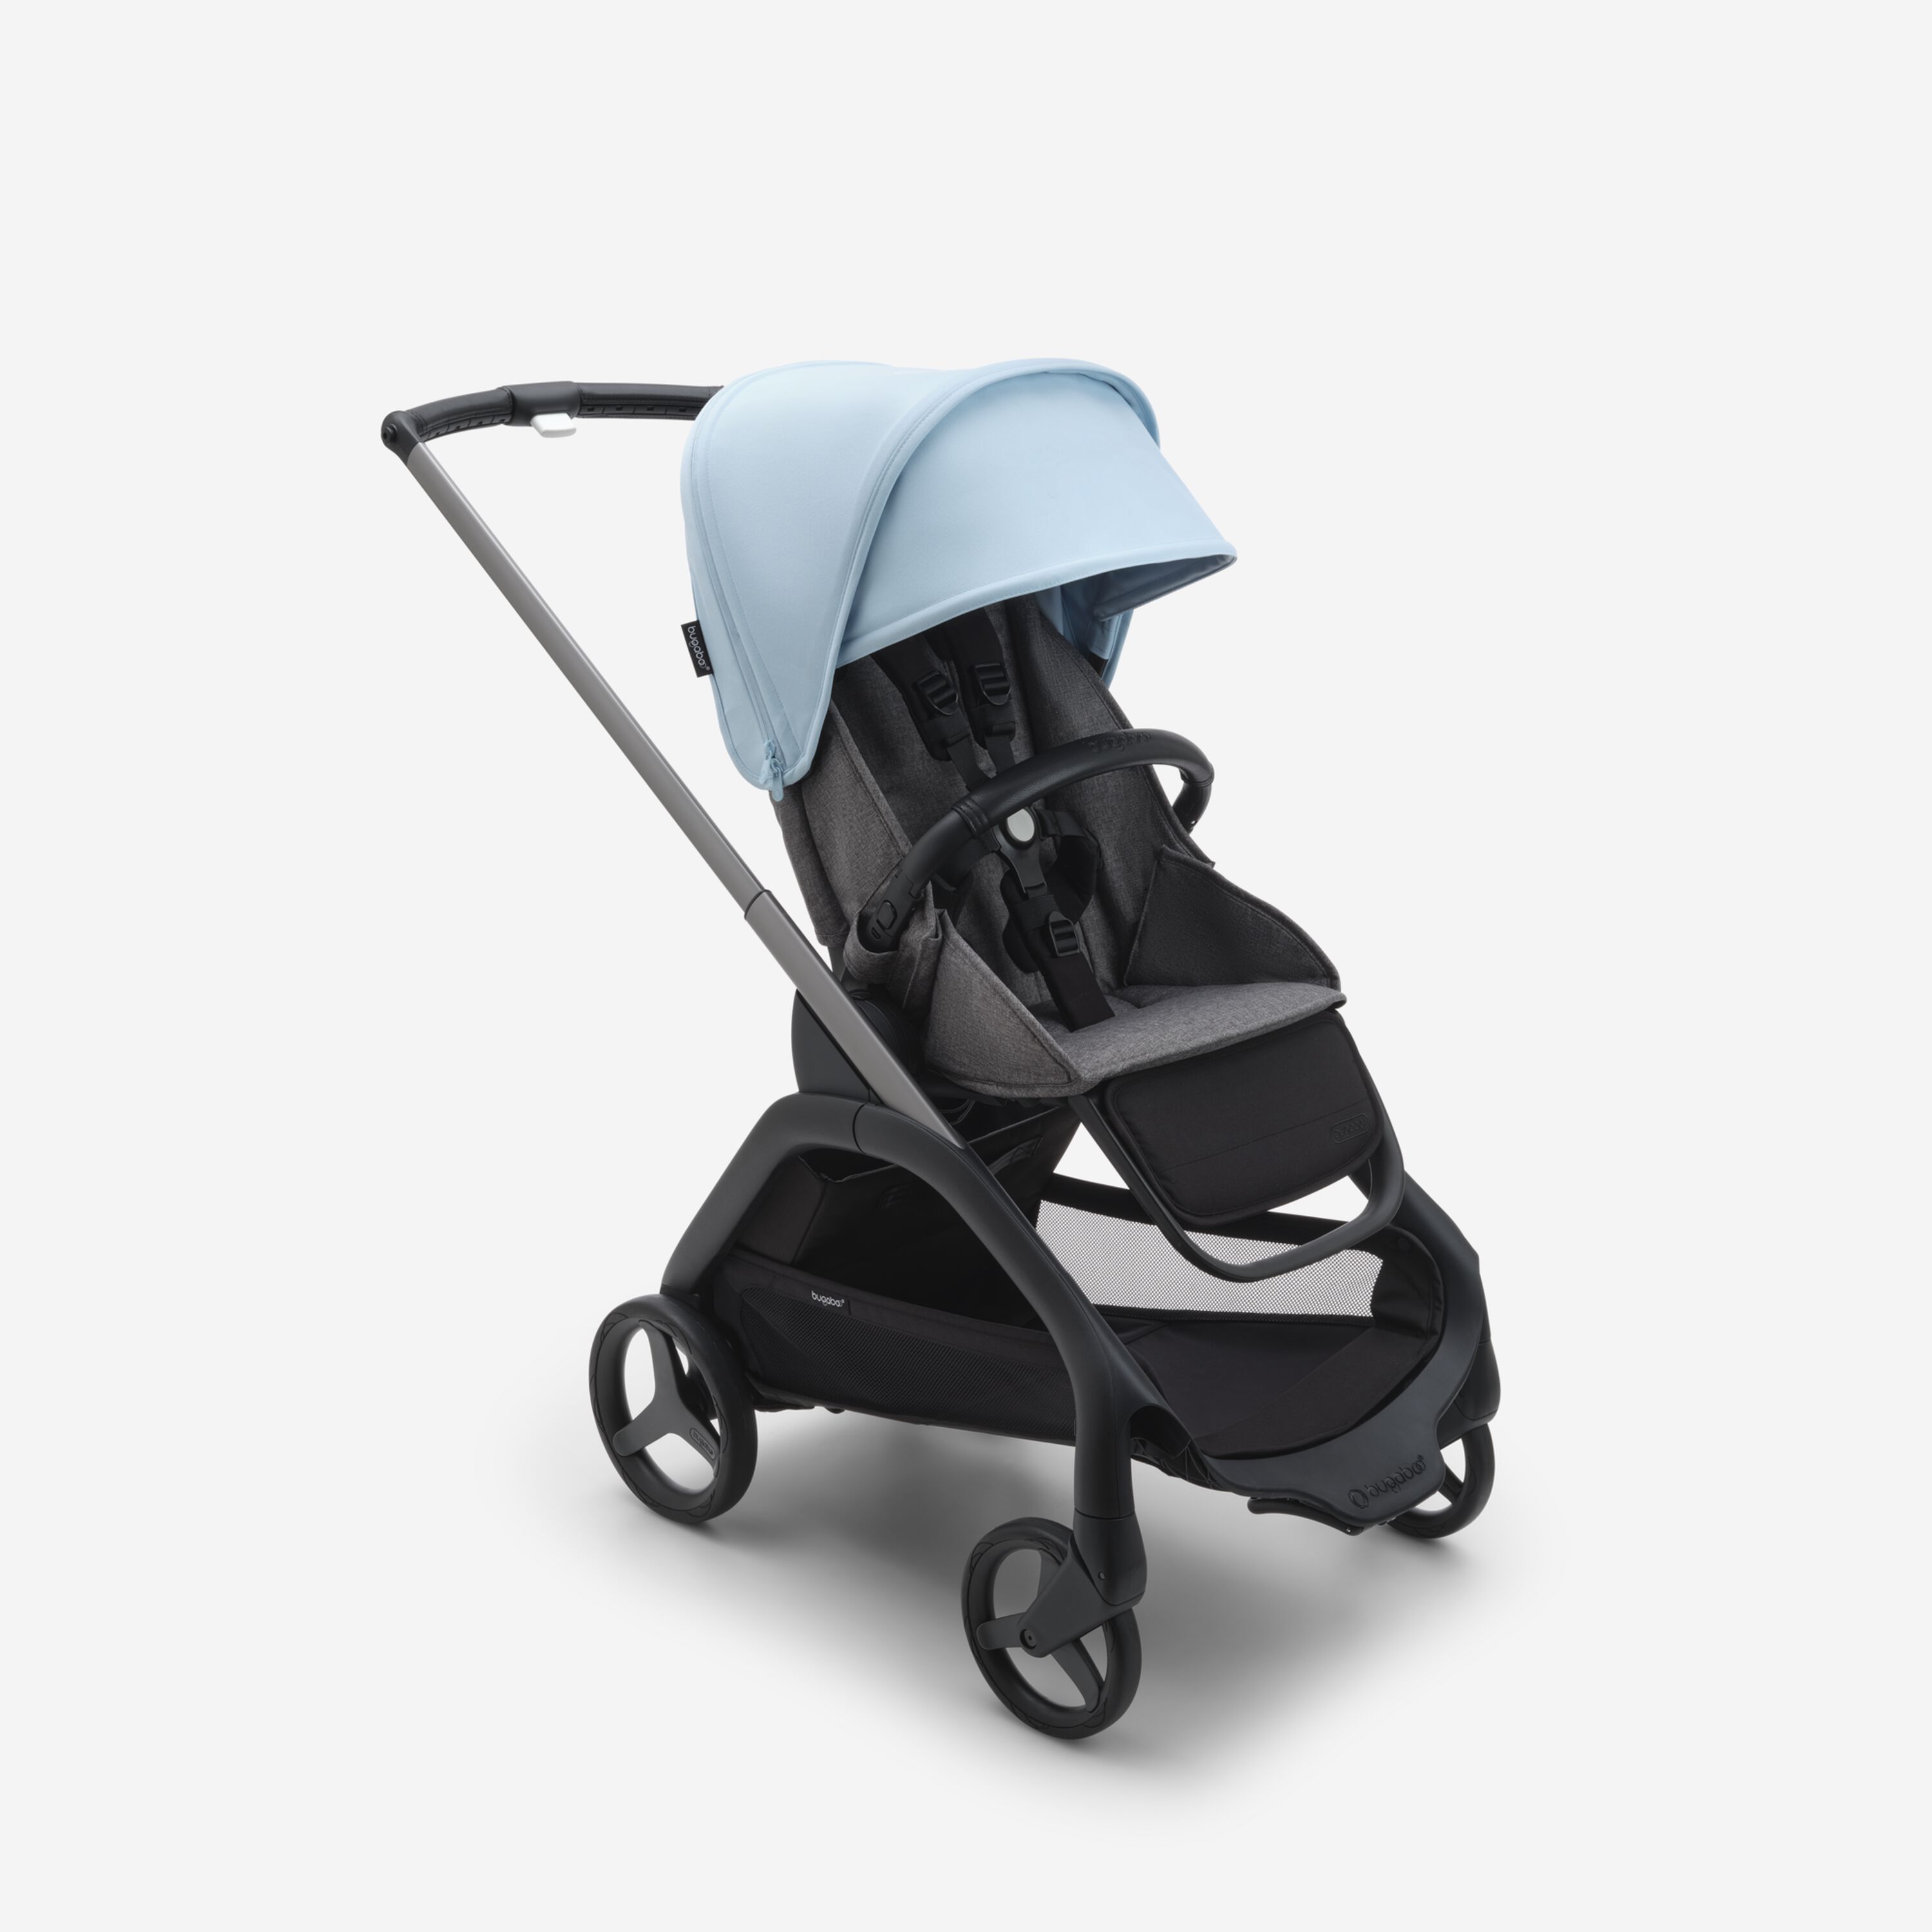 Коляска прогулочная Bugaboo Dragonfly Graphite, Grey melange, Skyline blue, 6м+ прогулочная коляска mutsy nexo concrete melange для новорожденных и детей до 22 кг